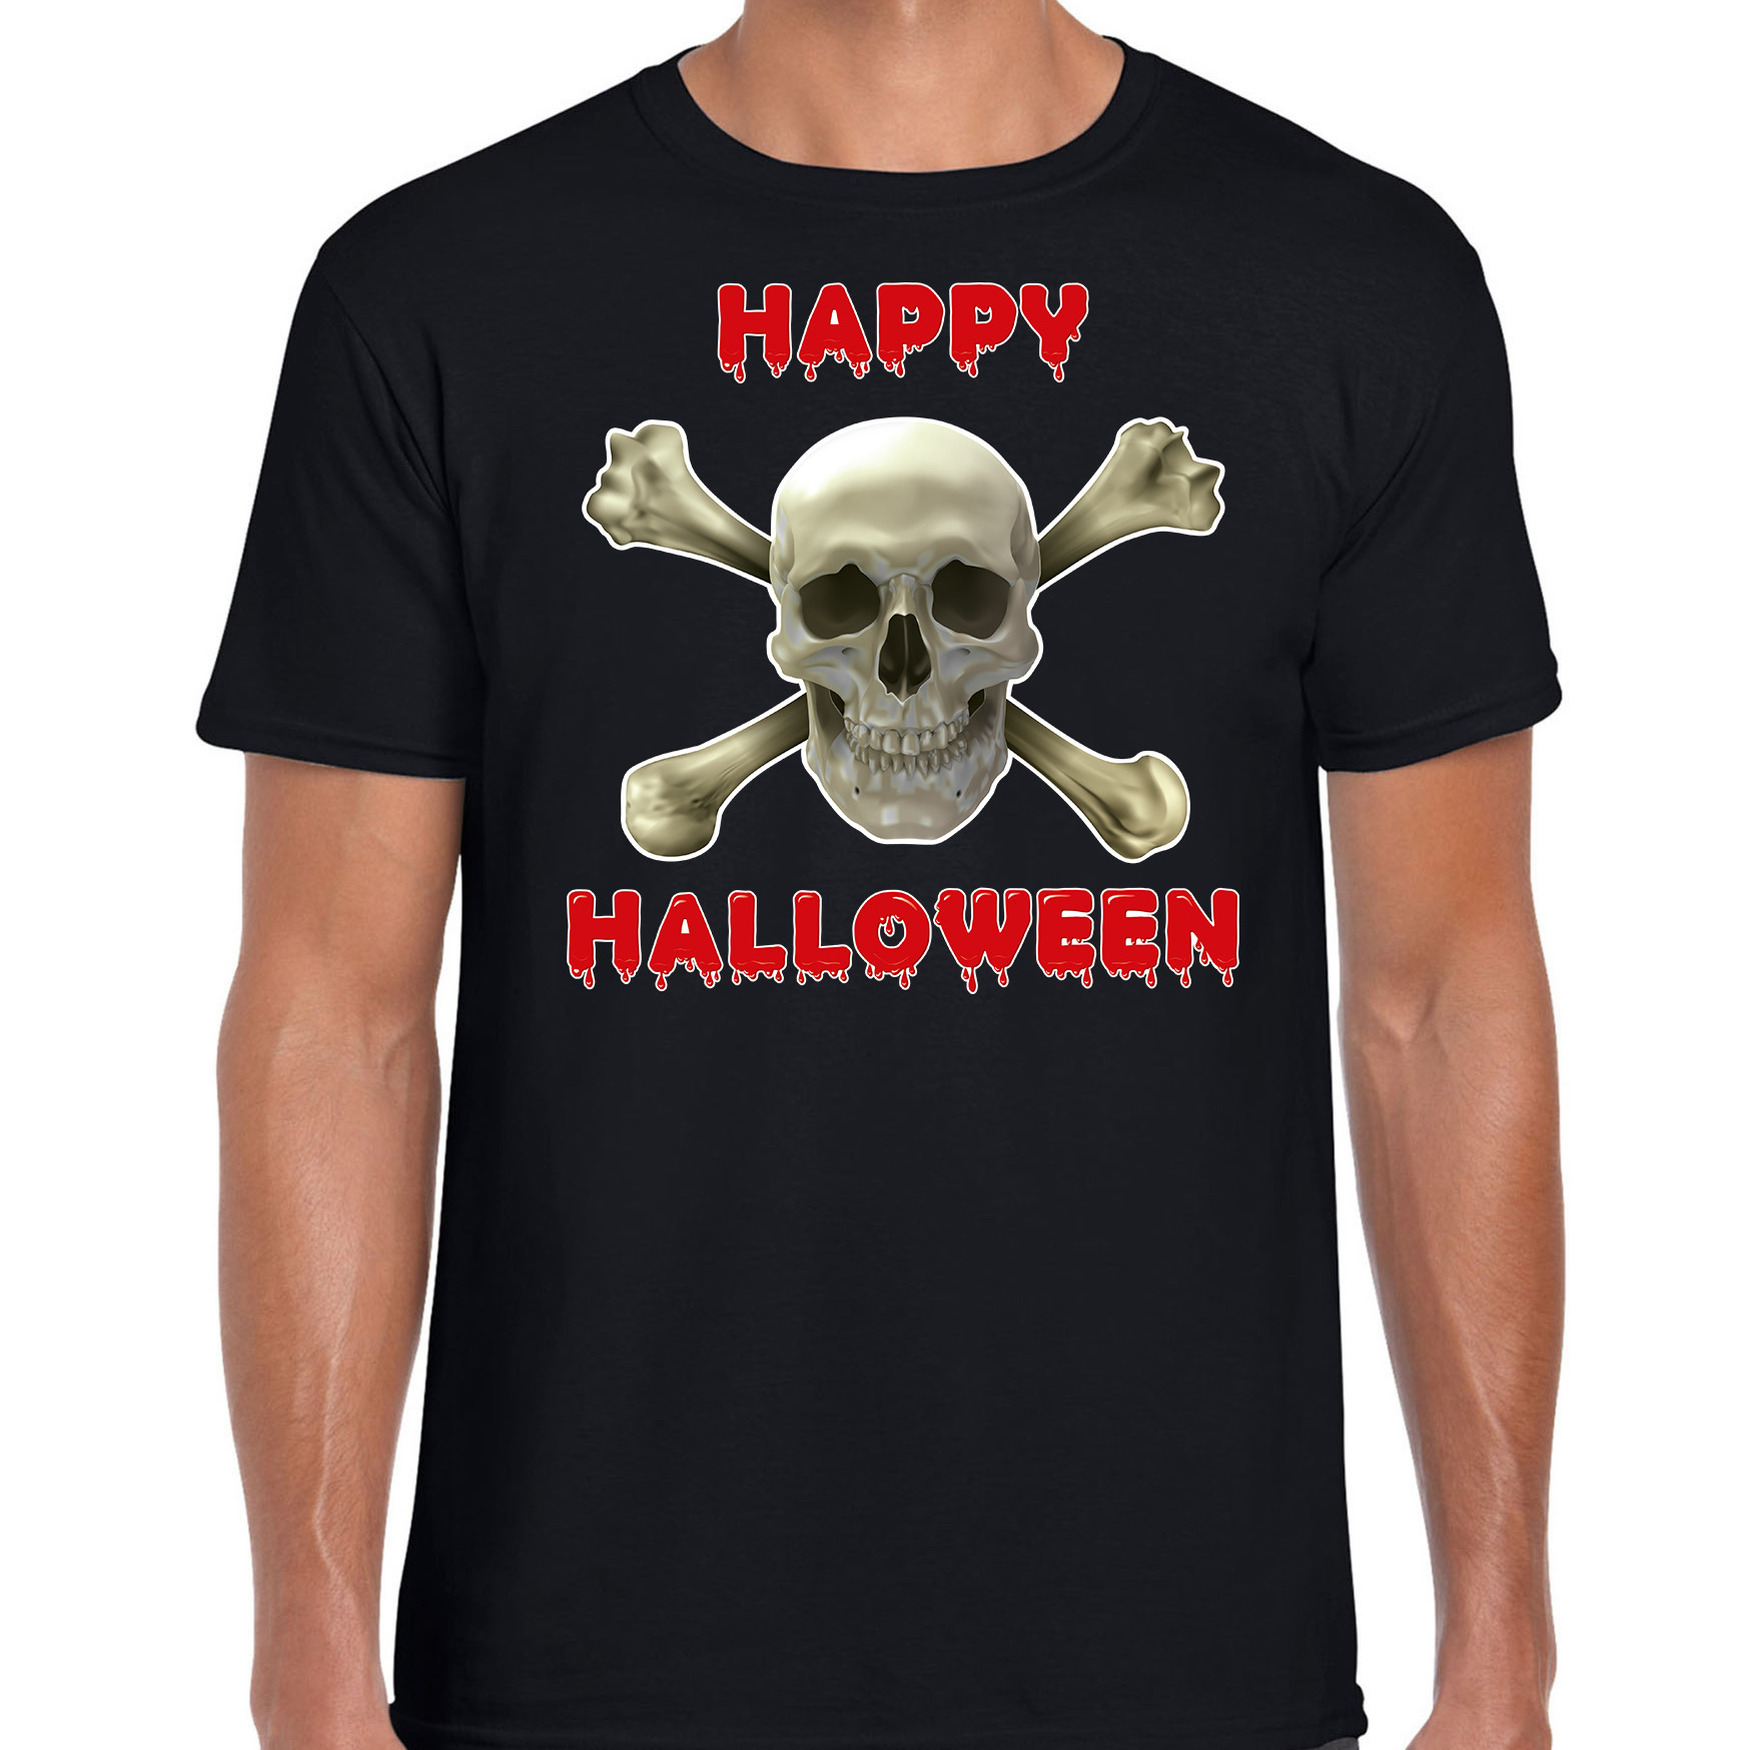 Happy Halloween horror schedel verkleed t-shirt zwart voor heren